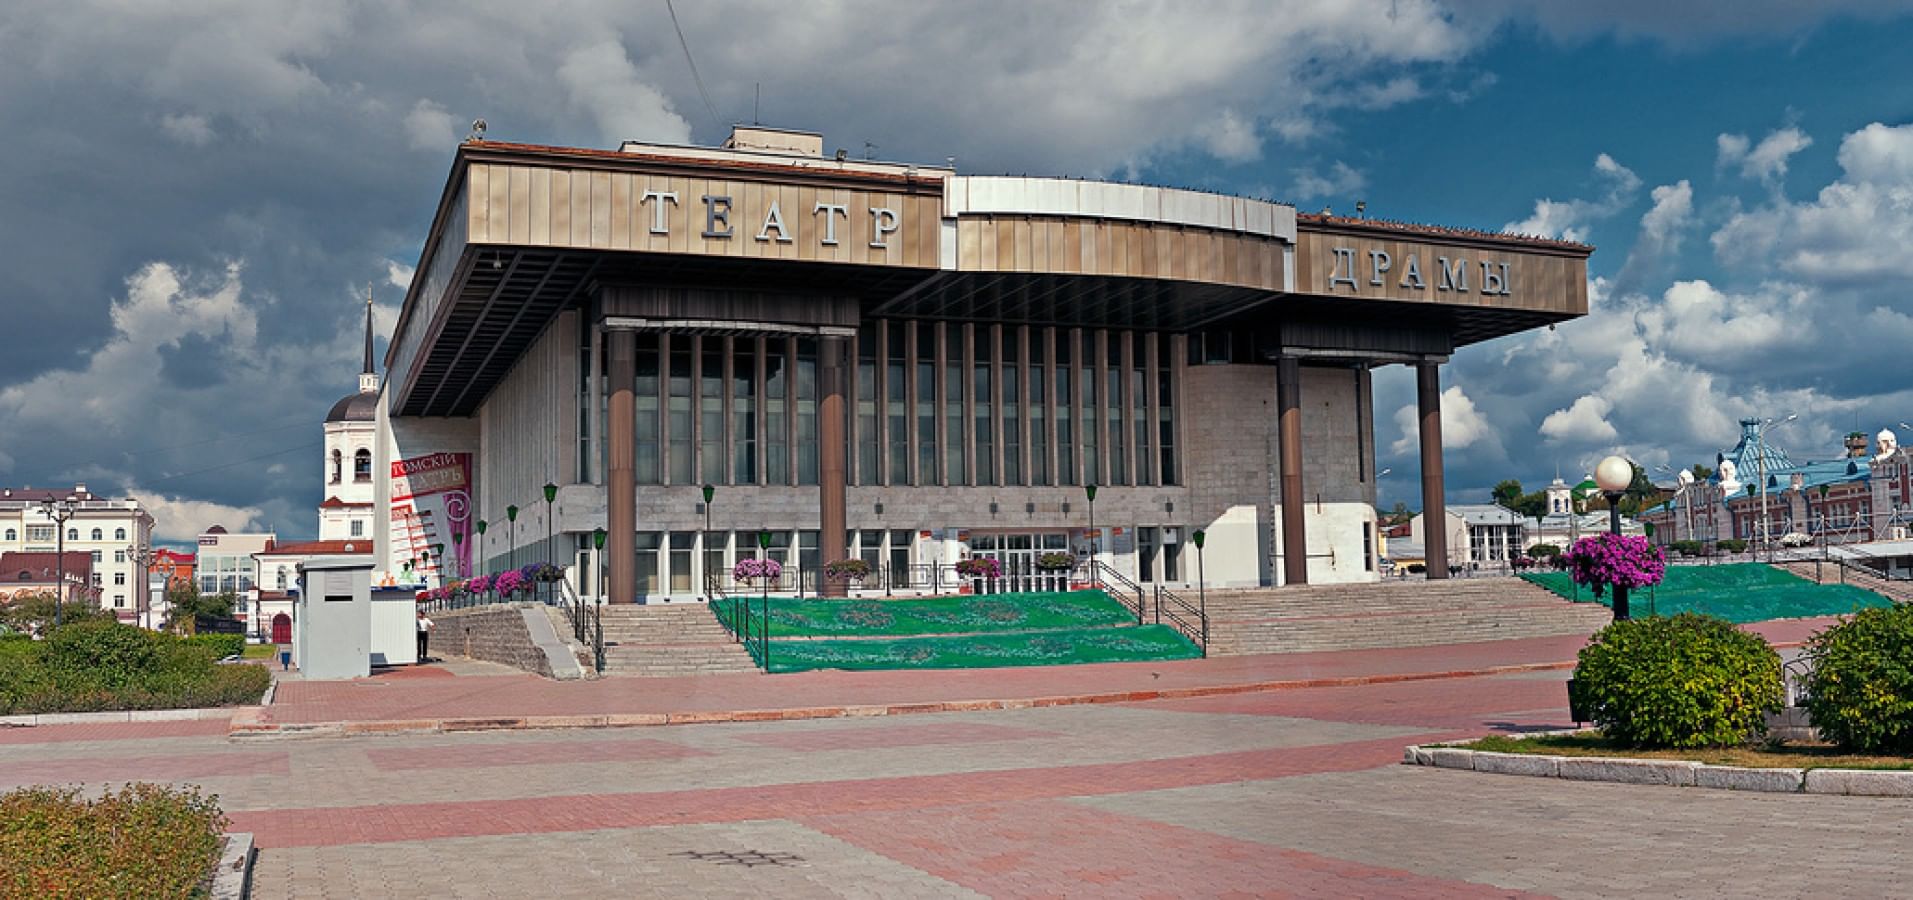 Томский областной театр драмы (Томск)